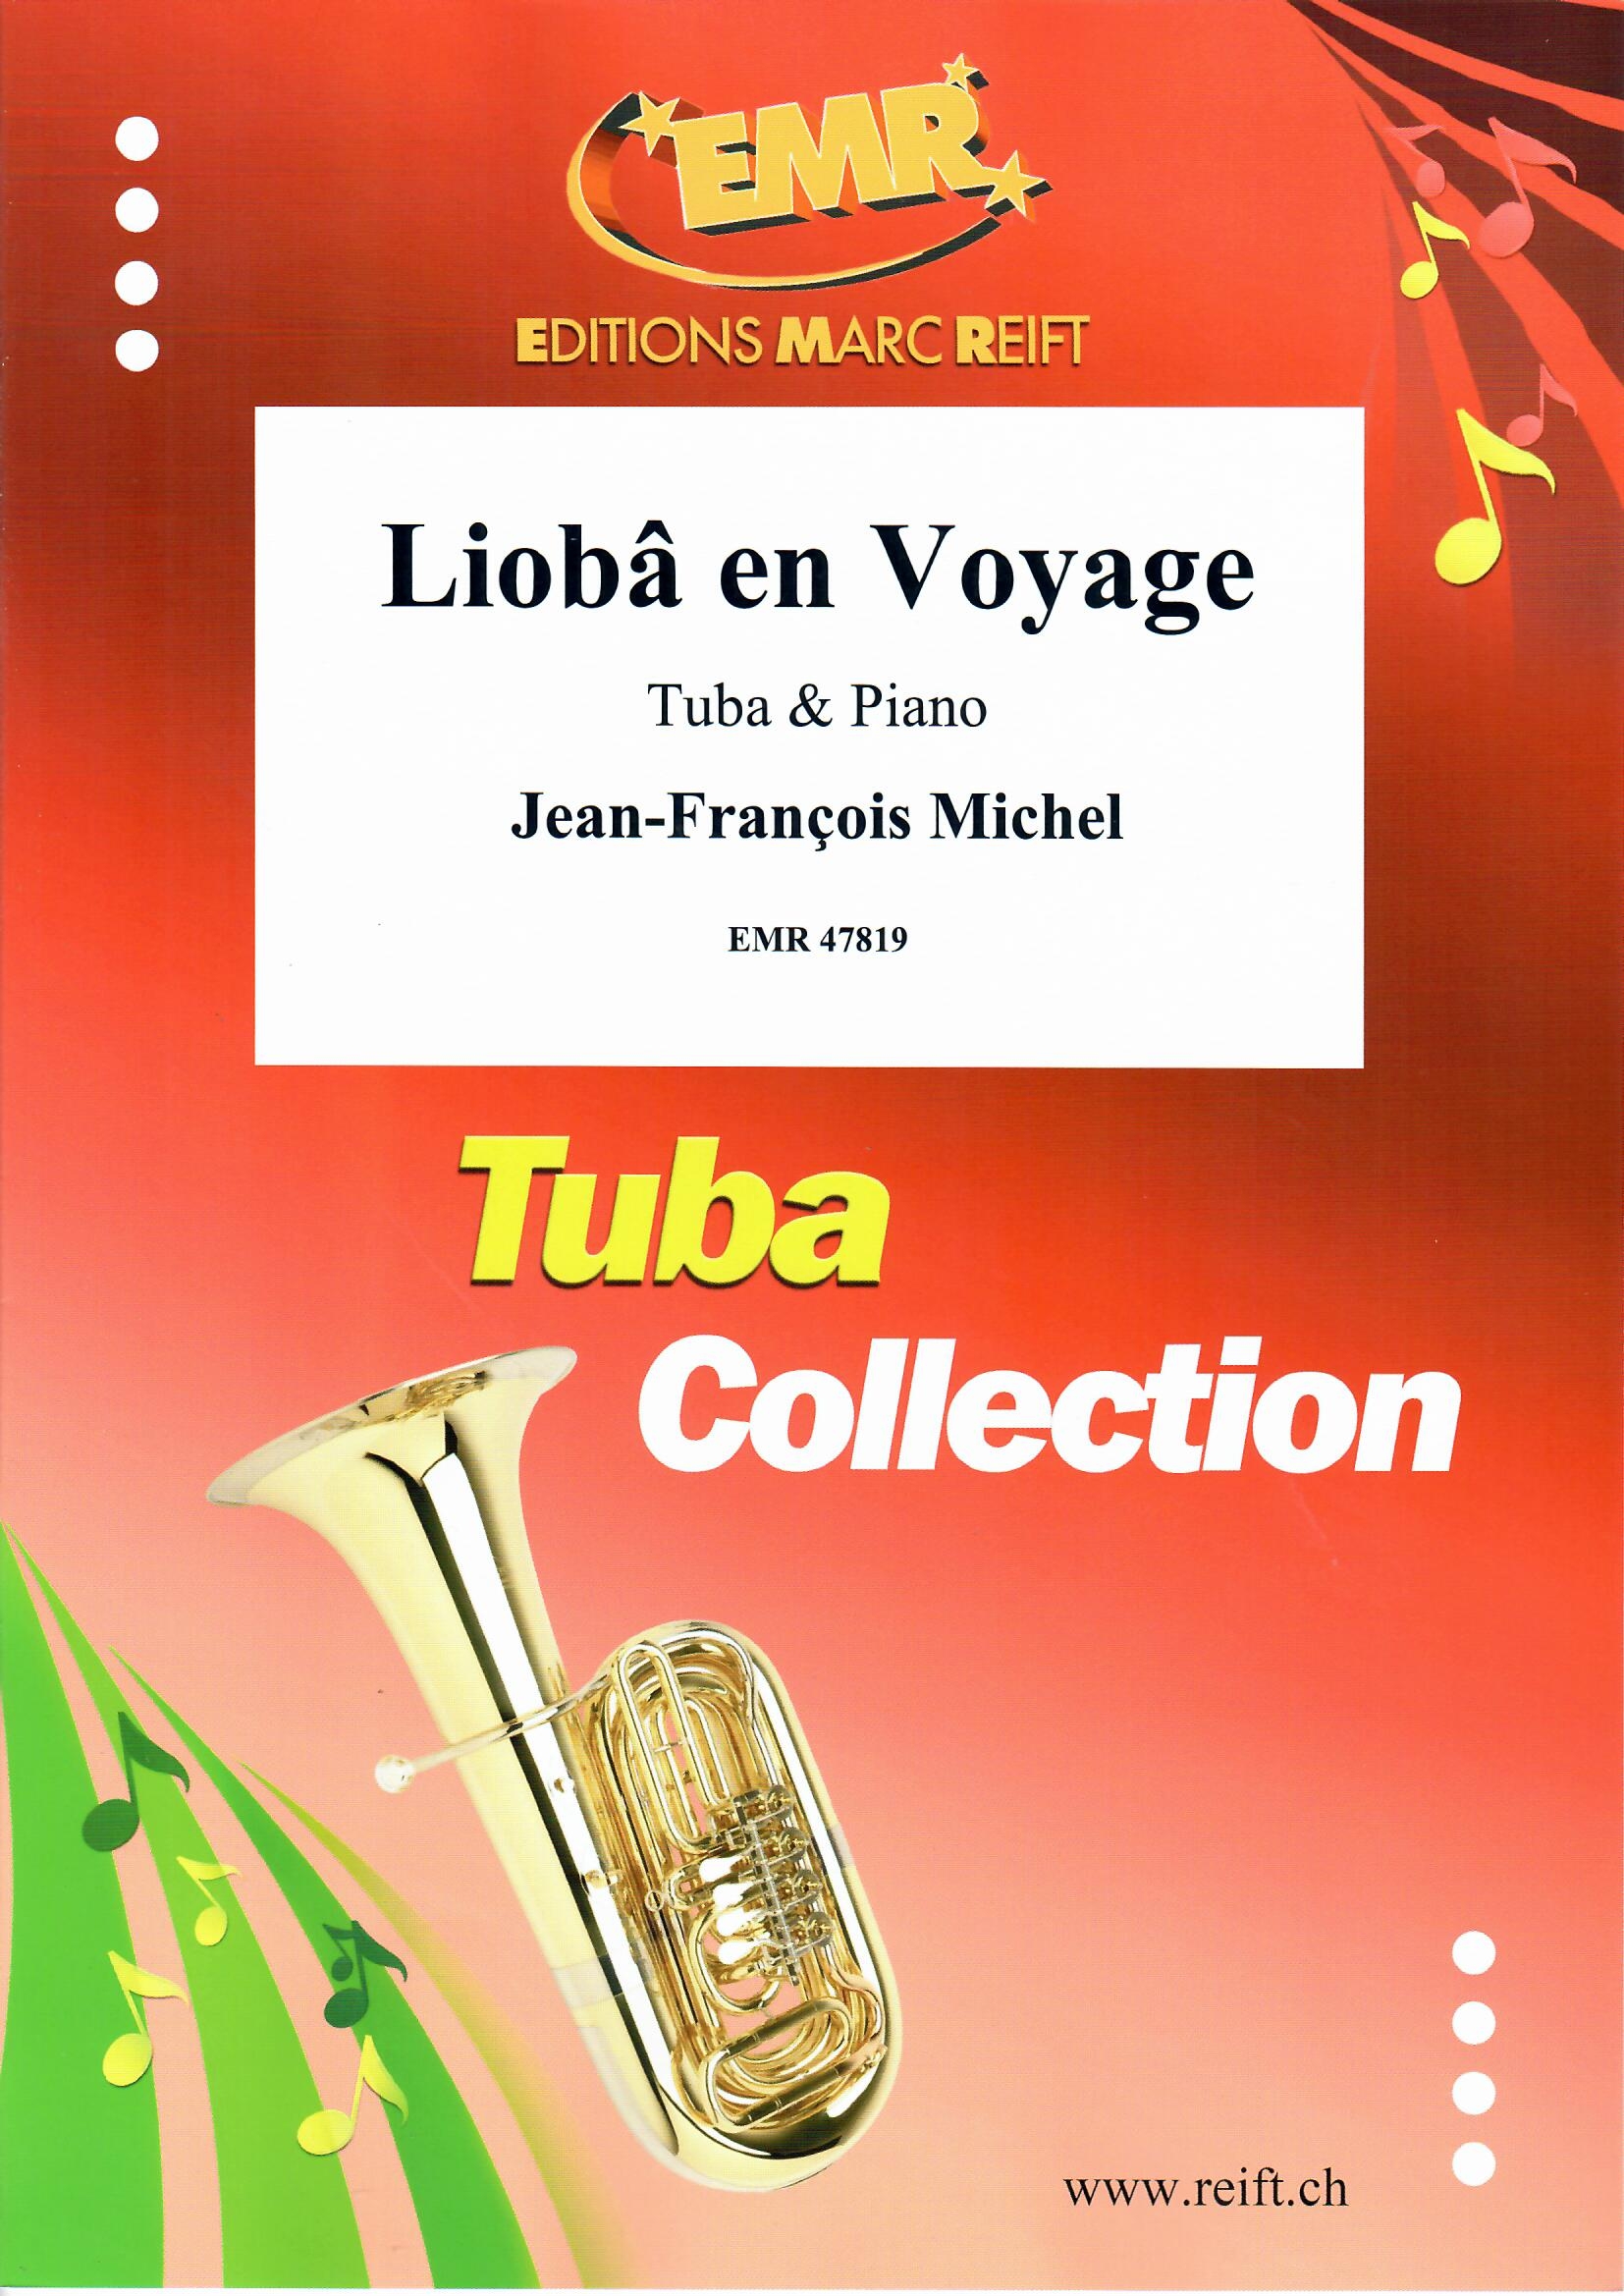 LIOBâ EN VOYAGE - Tuba & Piano